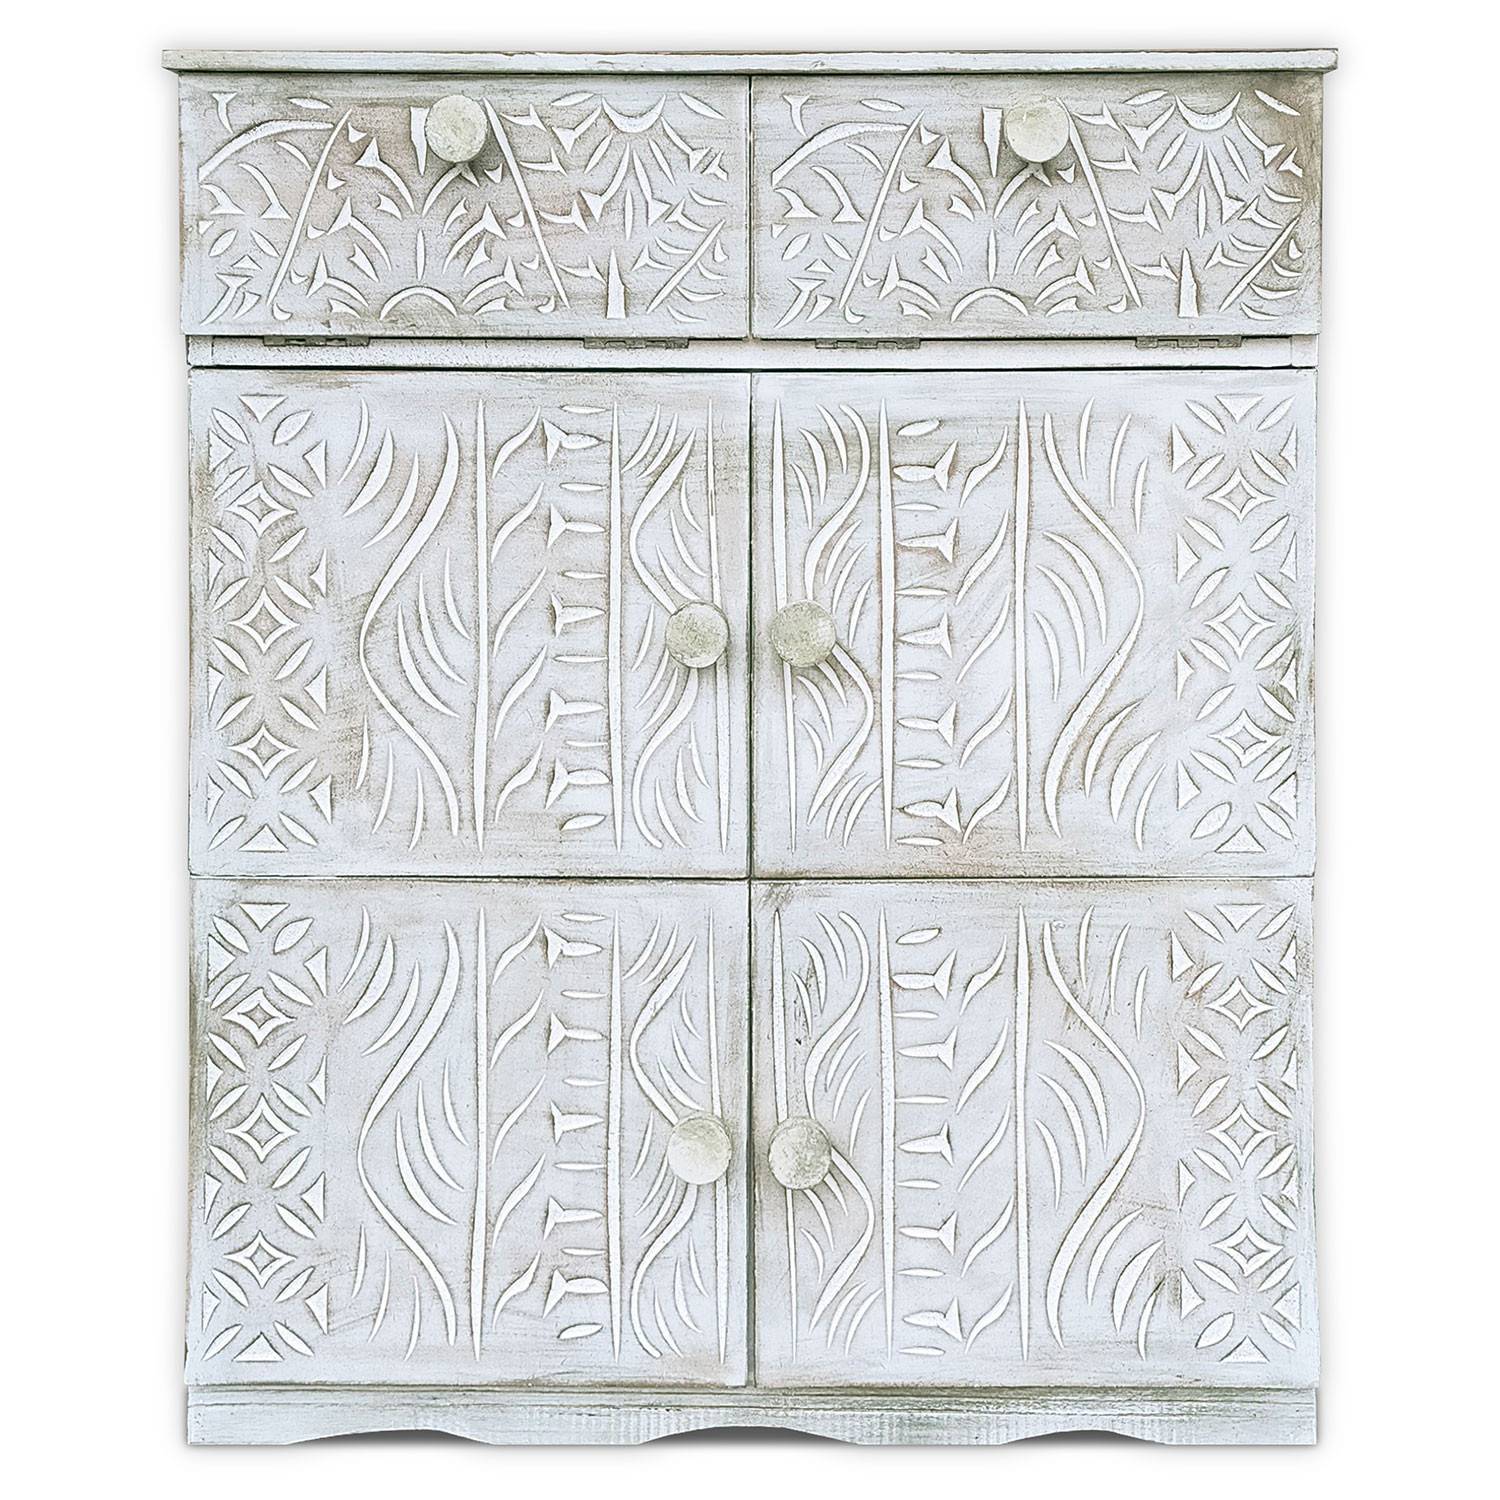 Gesneden houten dressoir in etnische stijl 6 deuren B70cm Anthiika Wit met patina afwerking